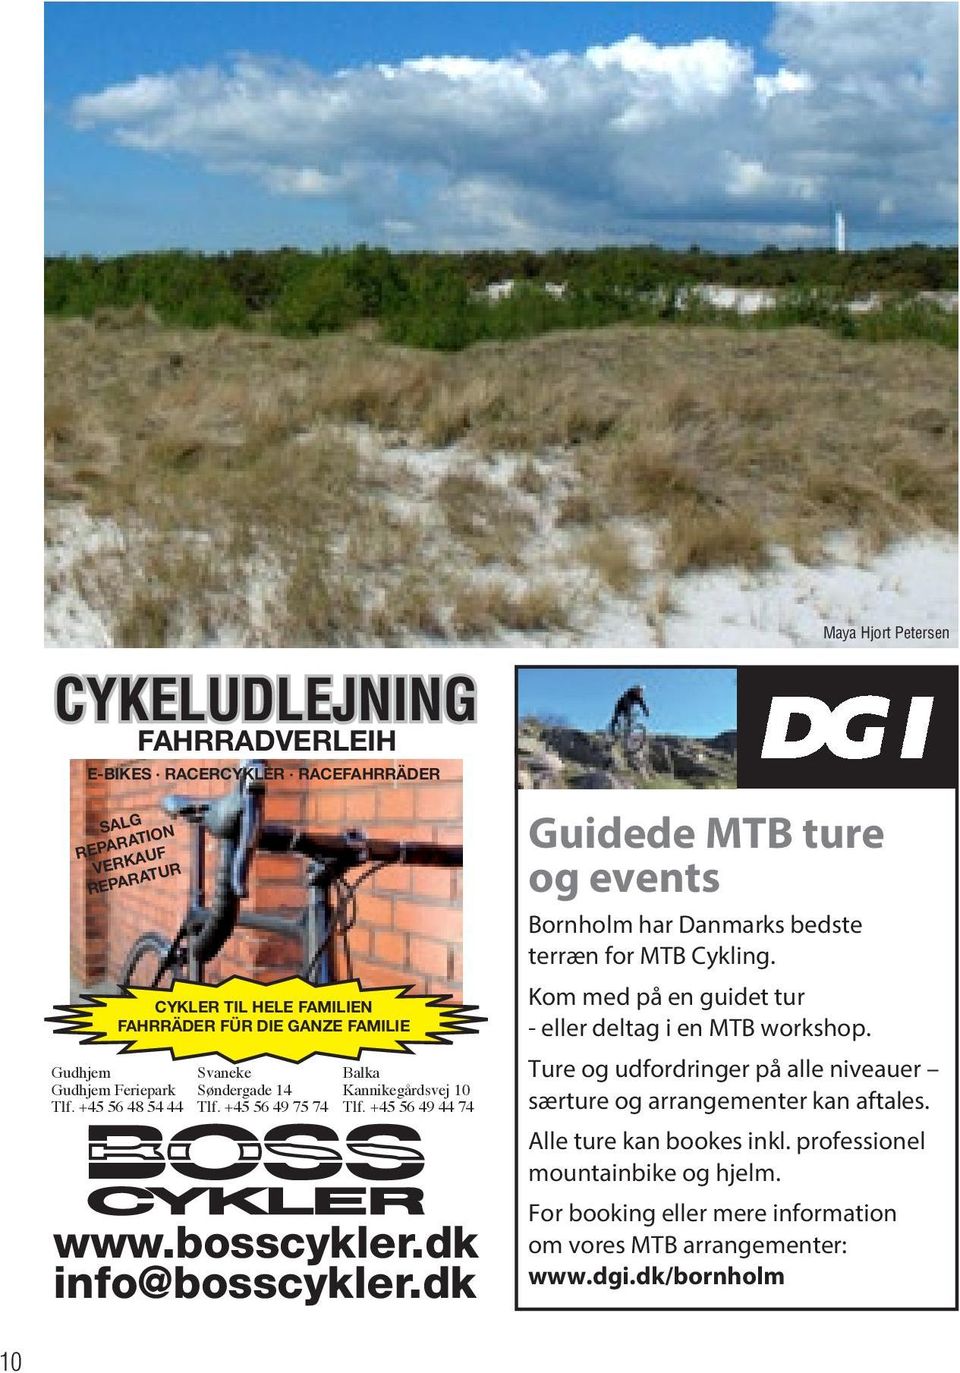 dk Guidede MTB ture og events Bornholm har Danmarks bedste terræn for MTB Cykling. Kom med på en guidet tur - eller deltag i en MTB workshop.